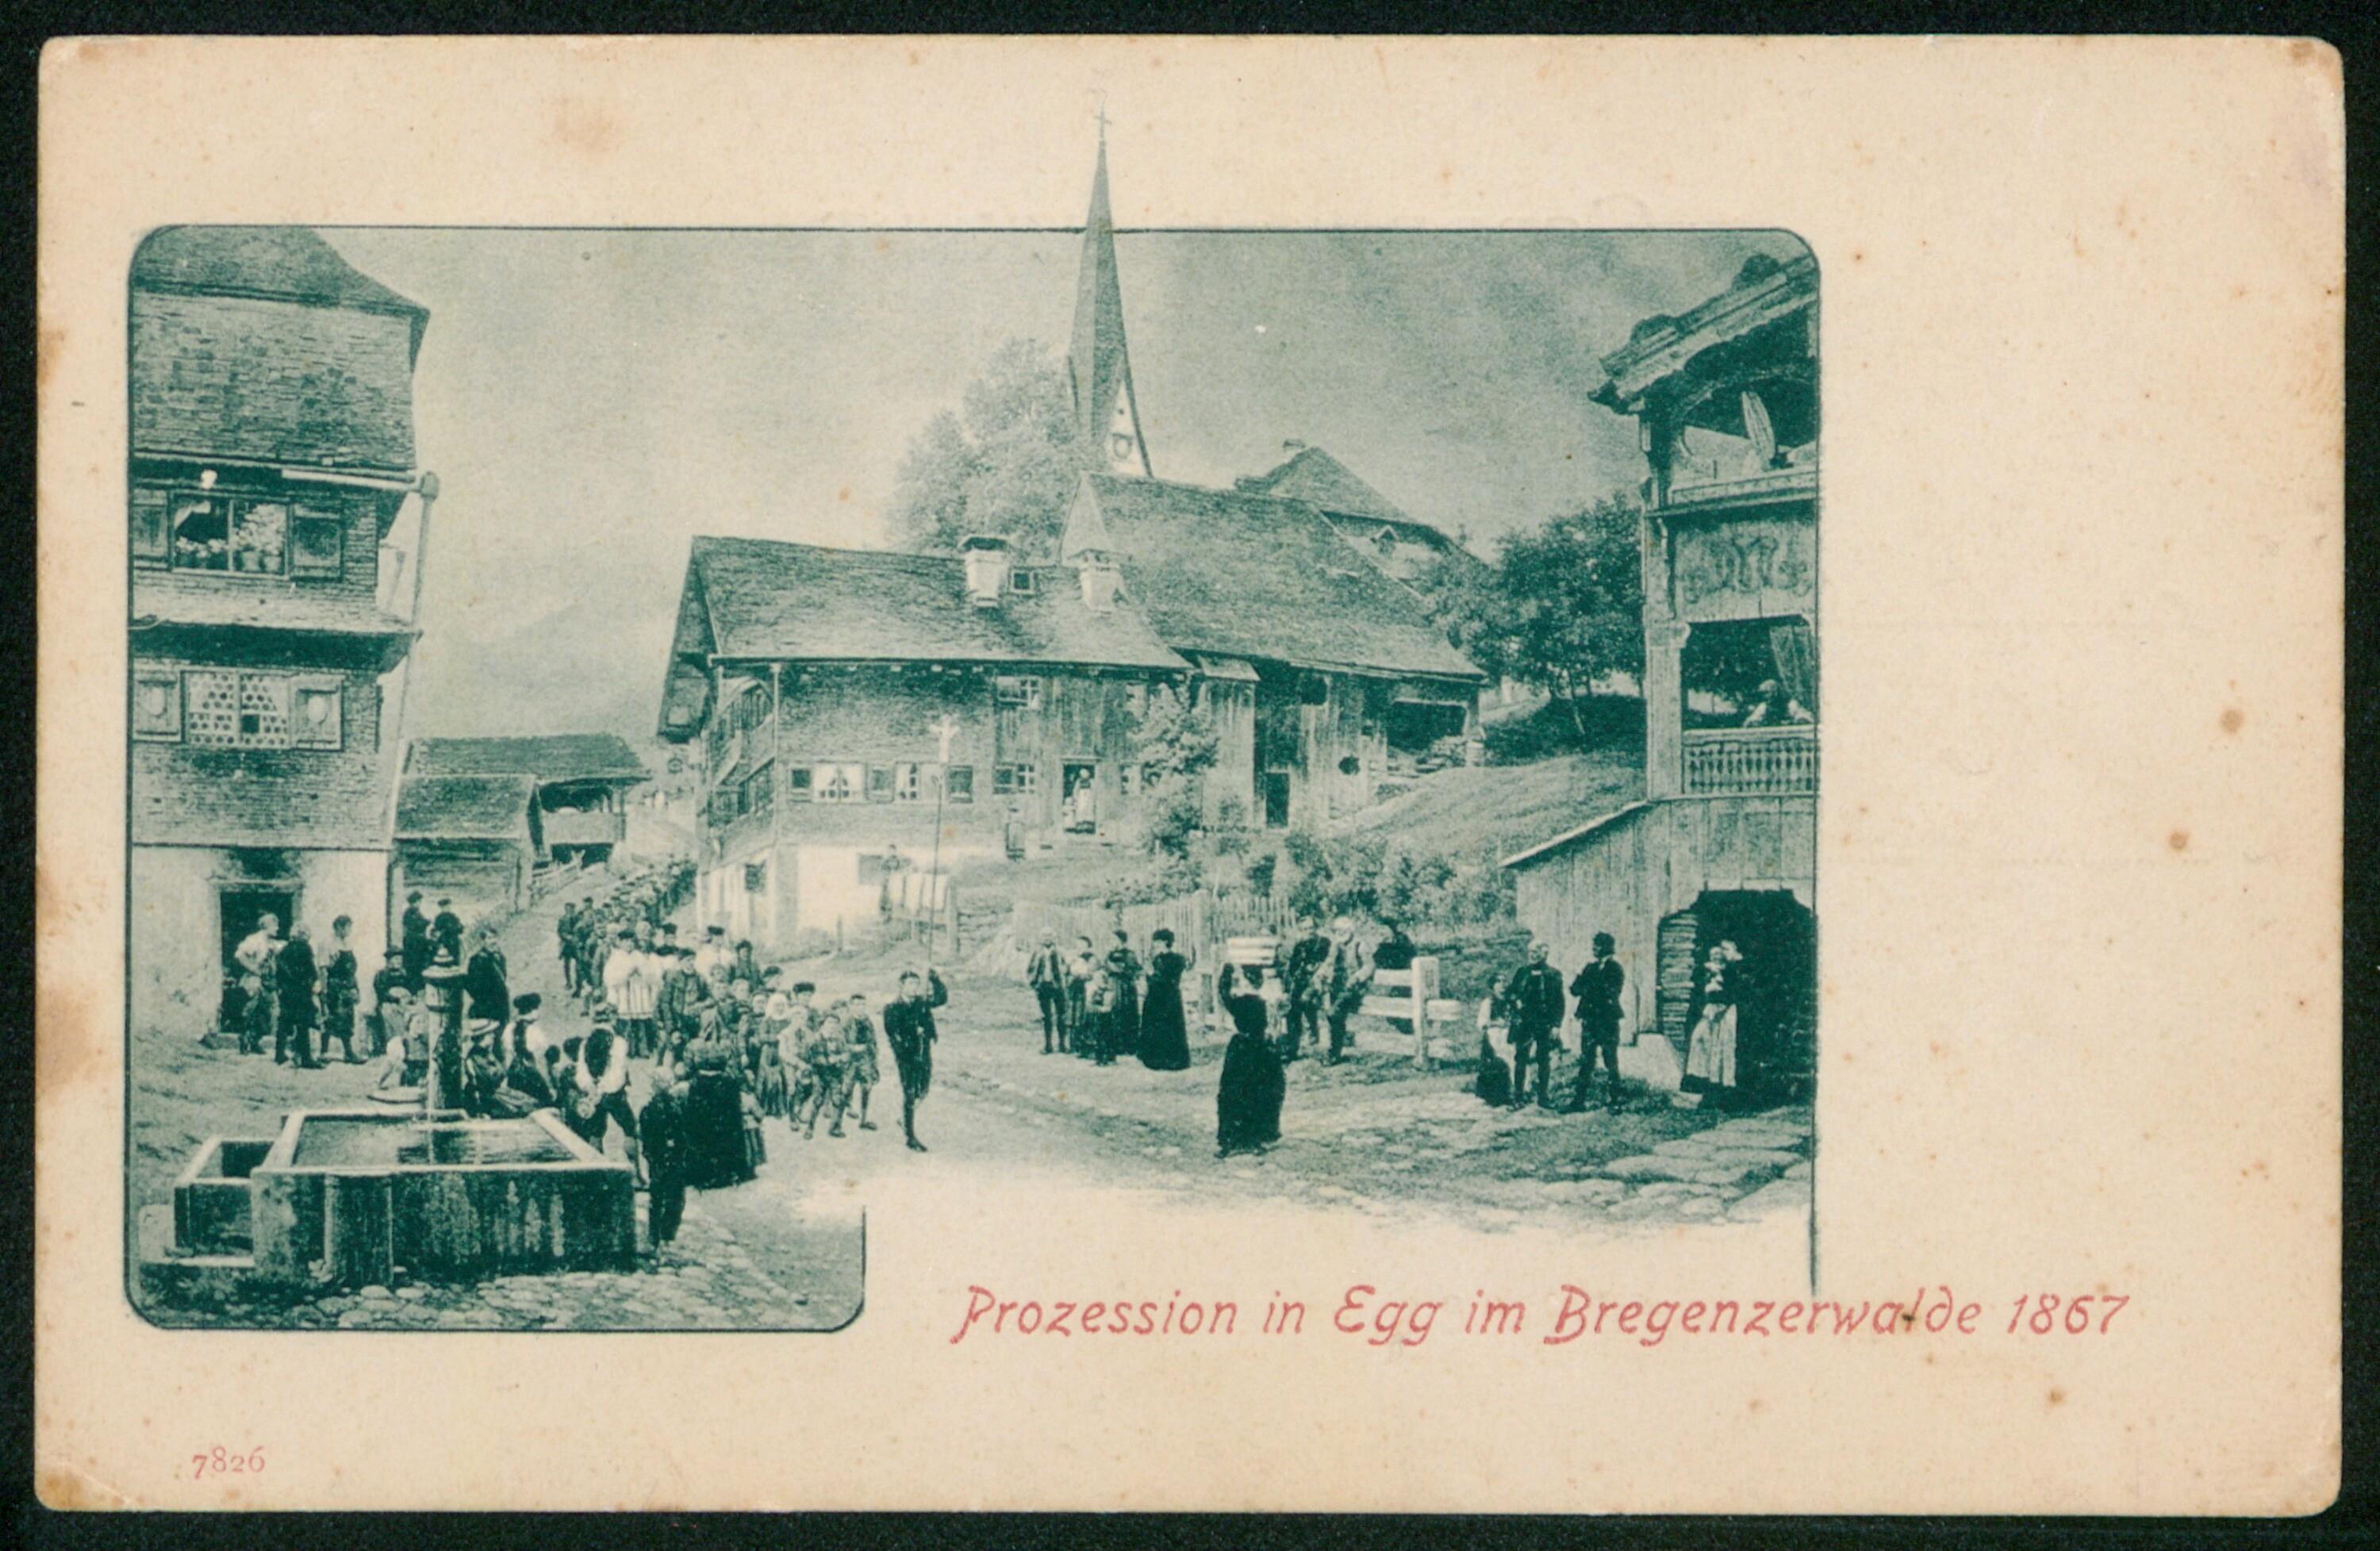 Prozession in Egg im Bregenzerwalde 1867></div>


    <hr>
    <div class=